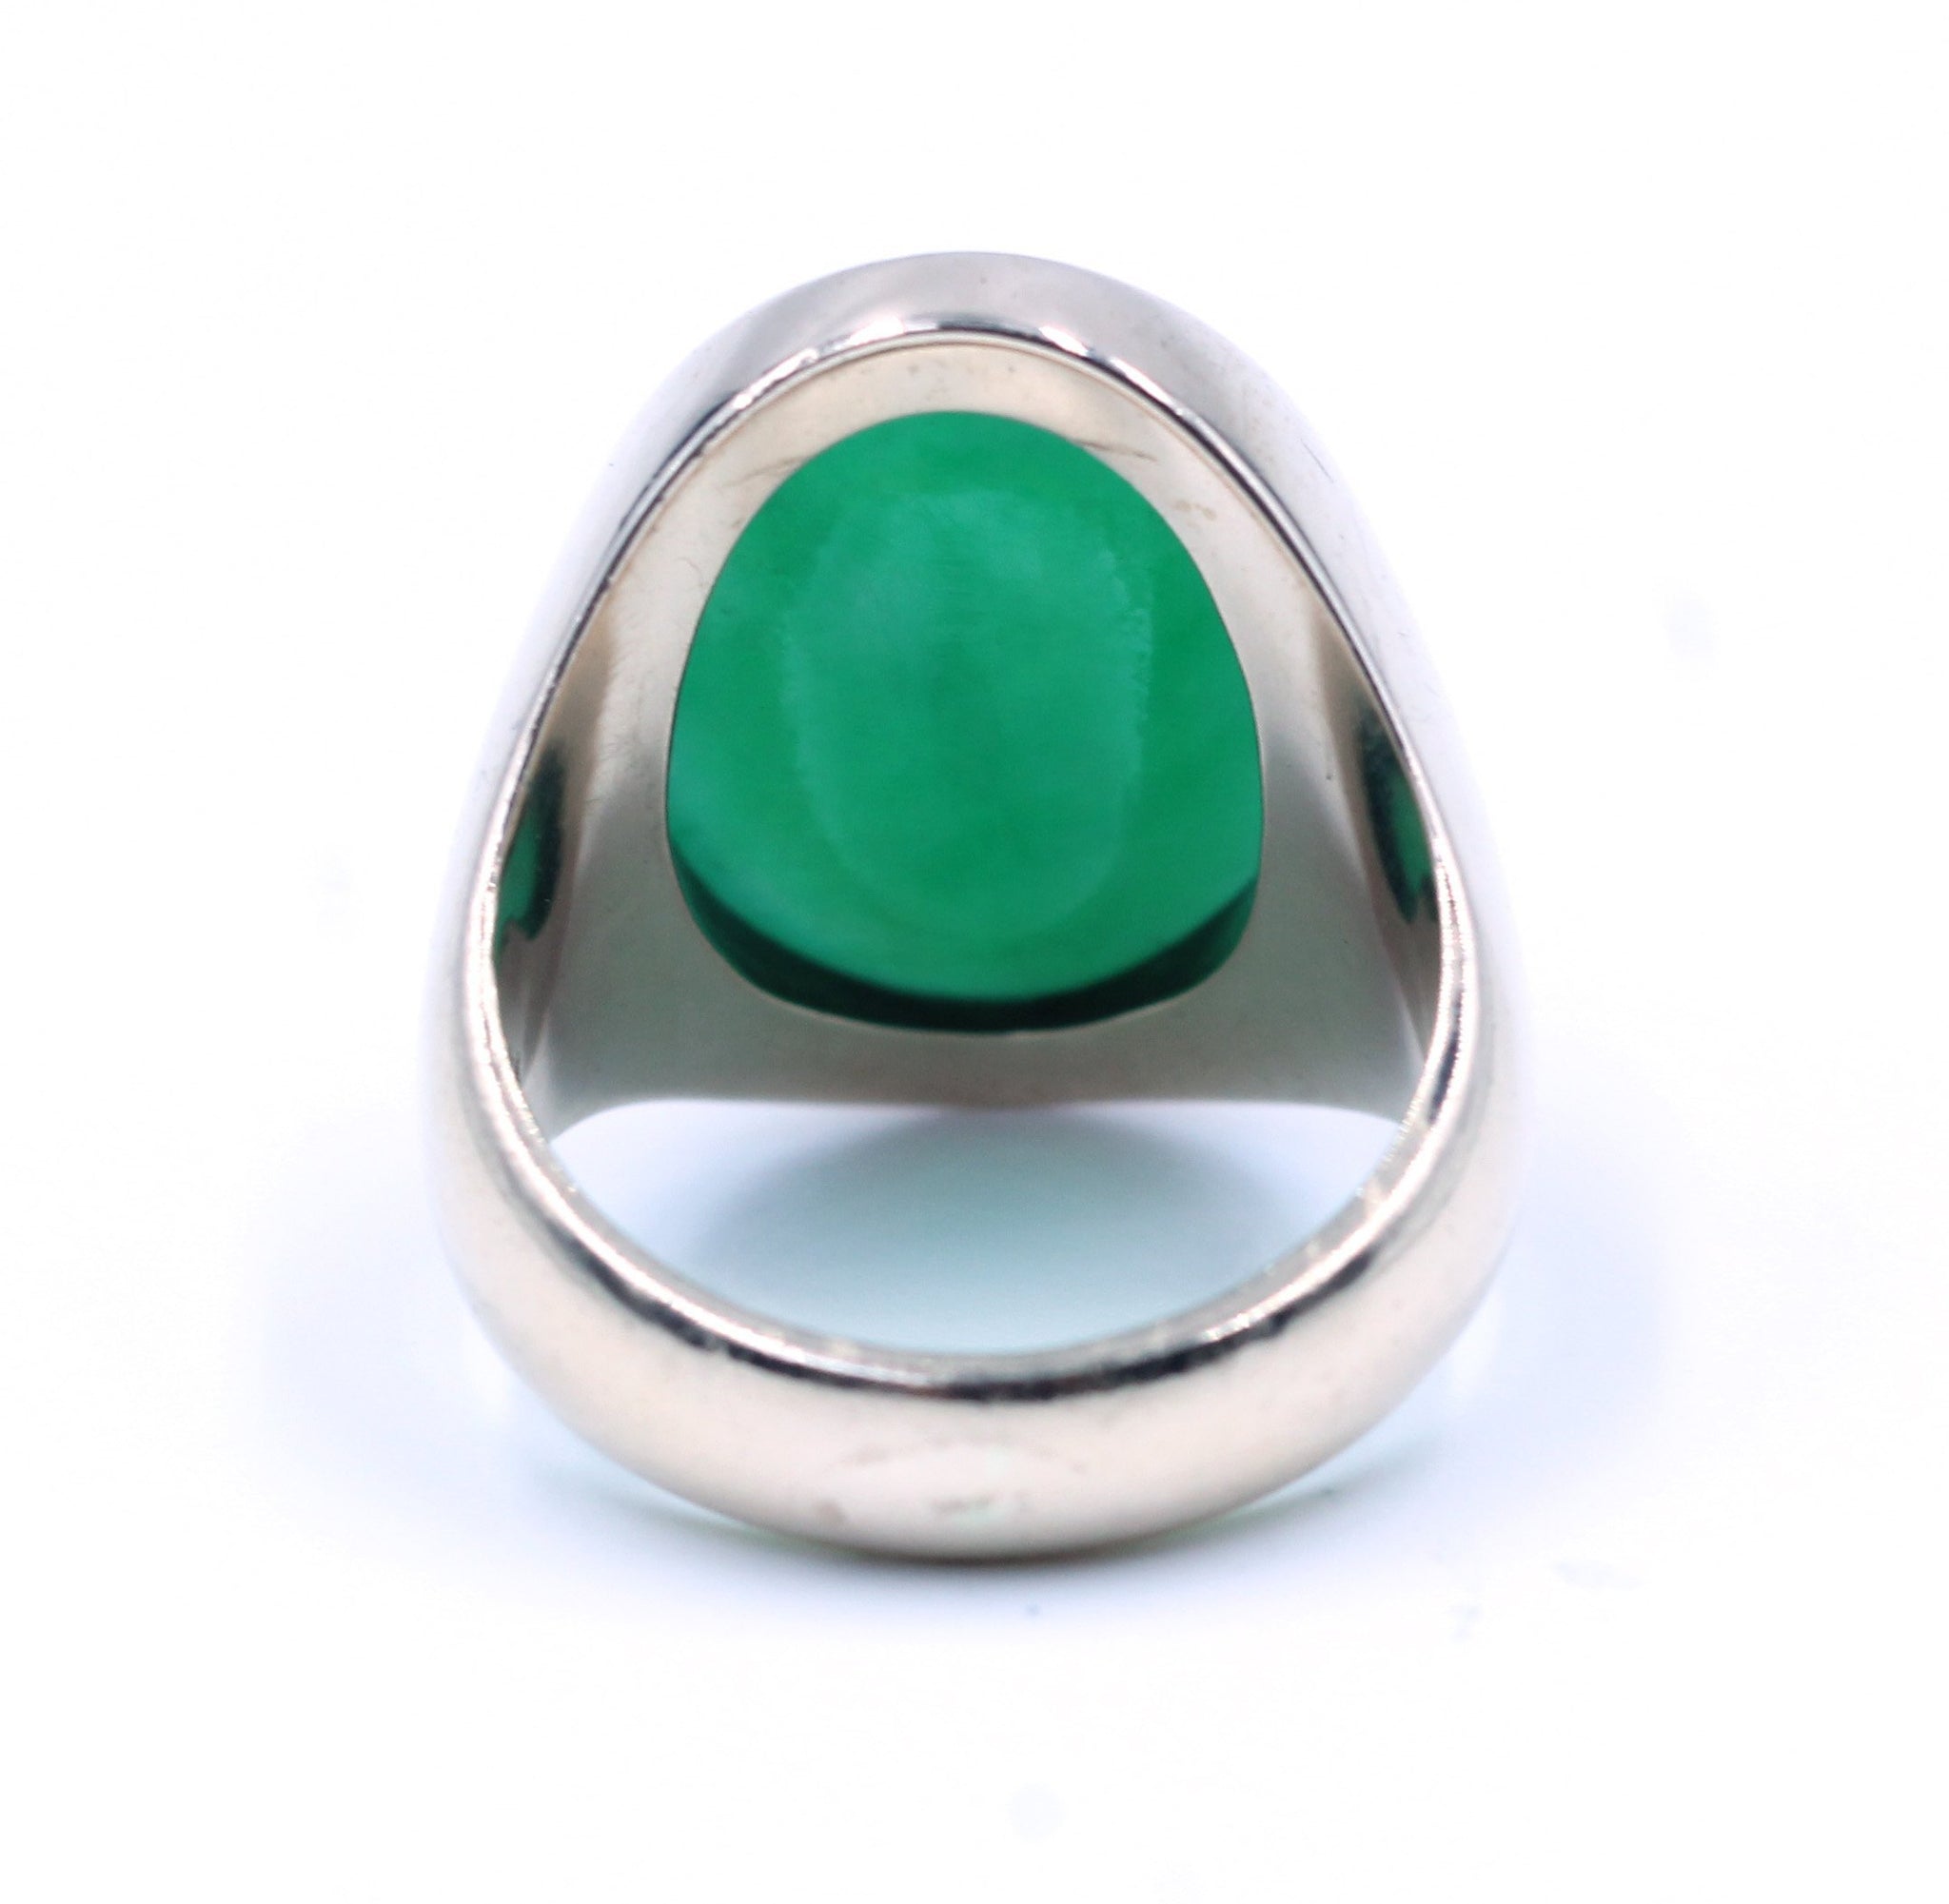 Vintage Jade Ring, SOLD